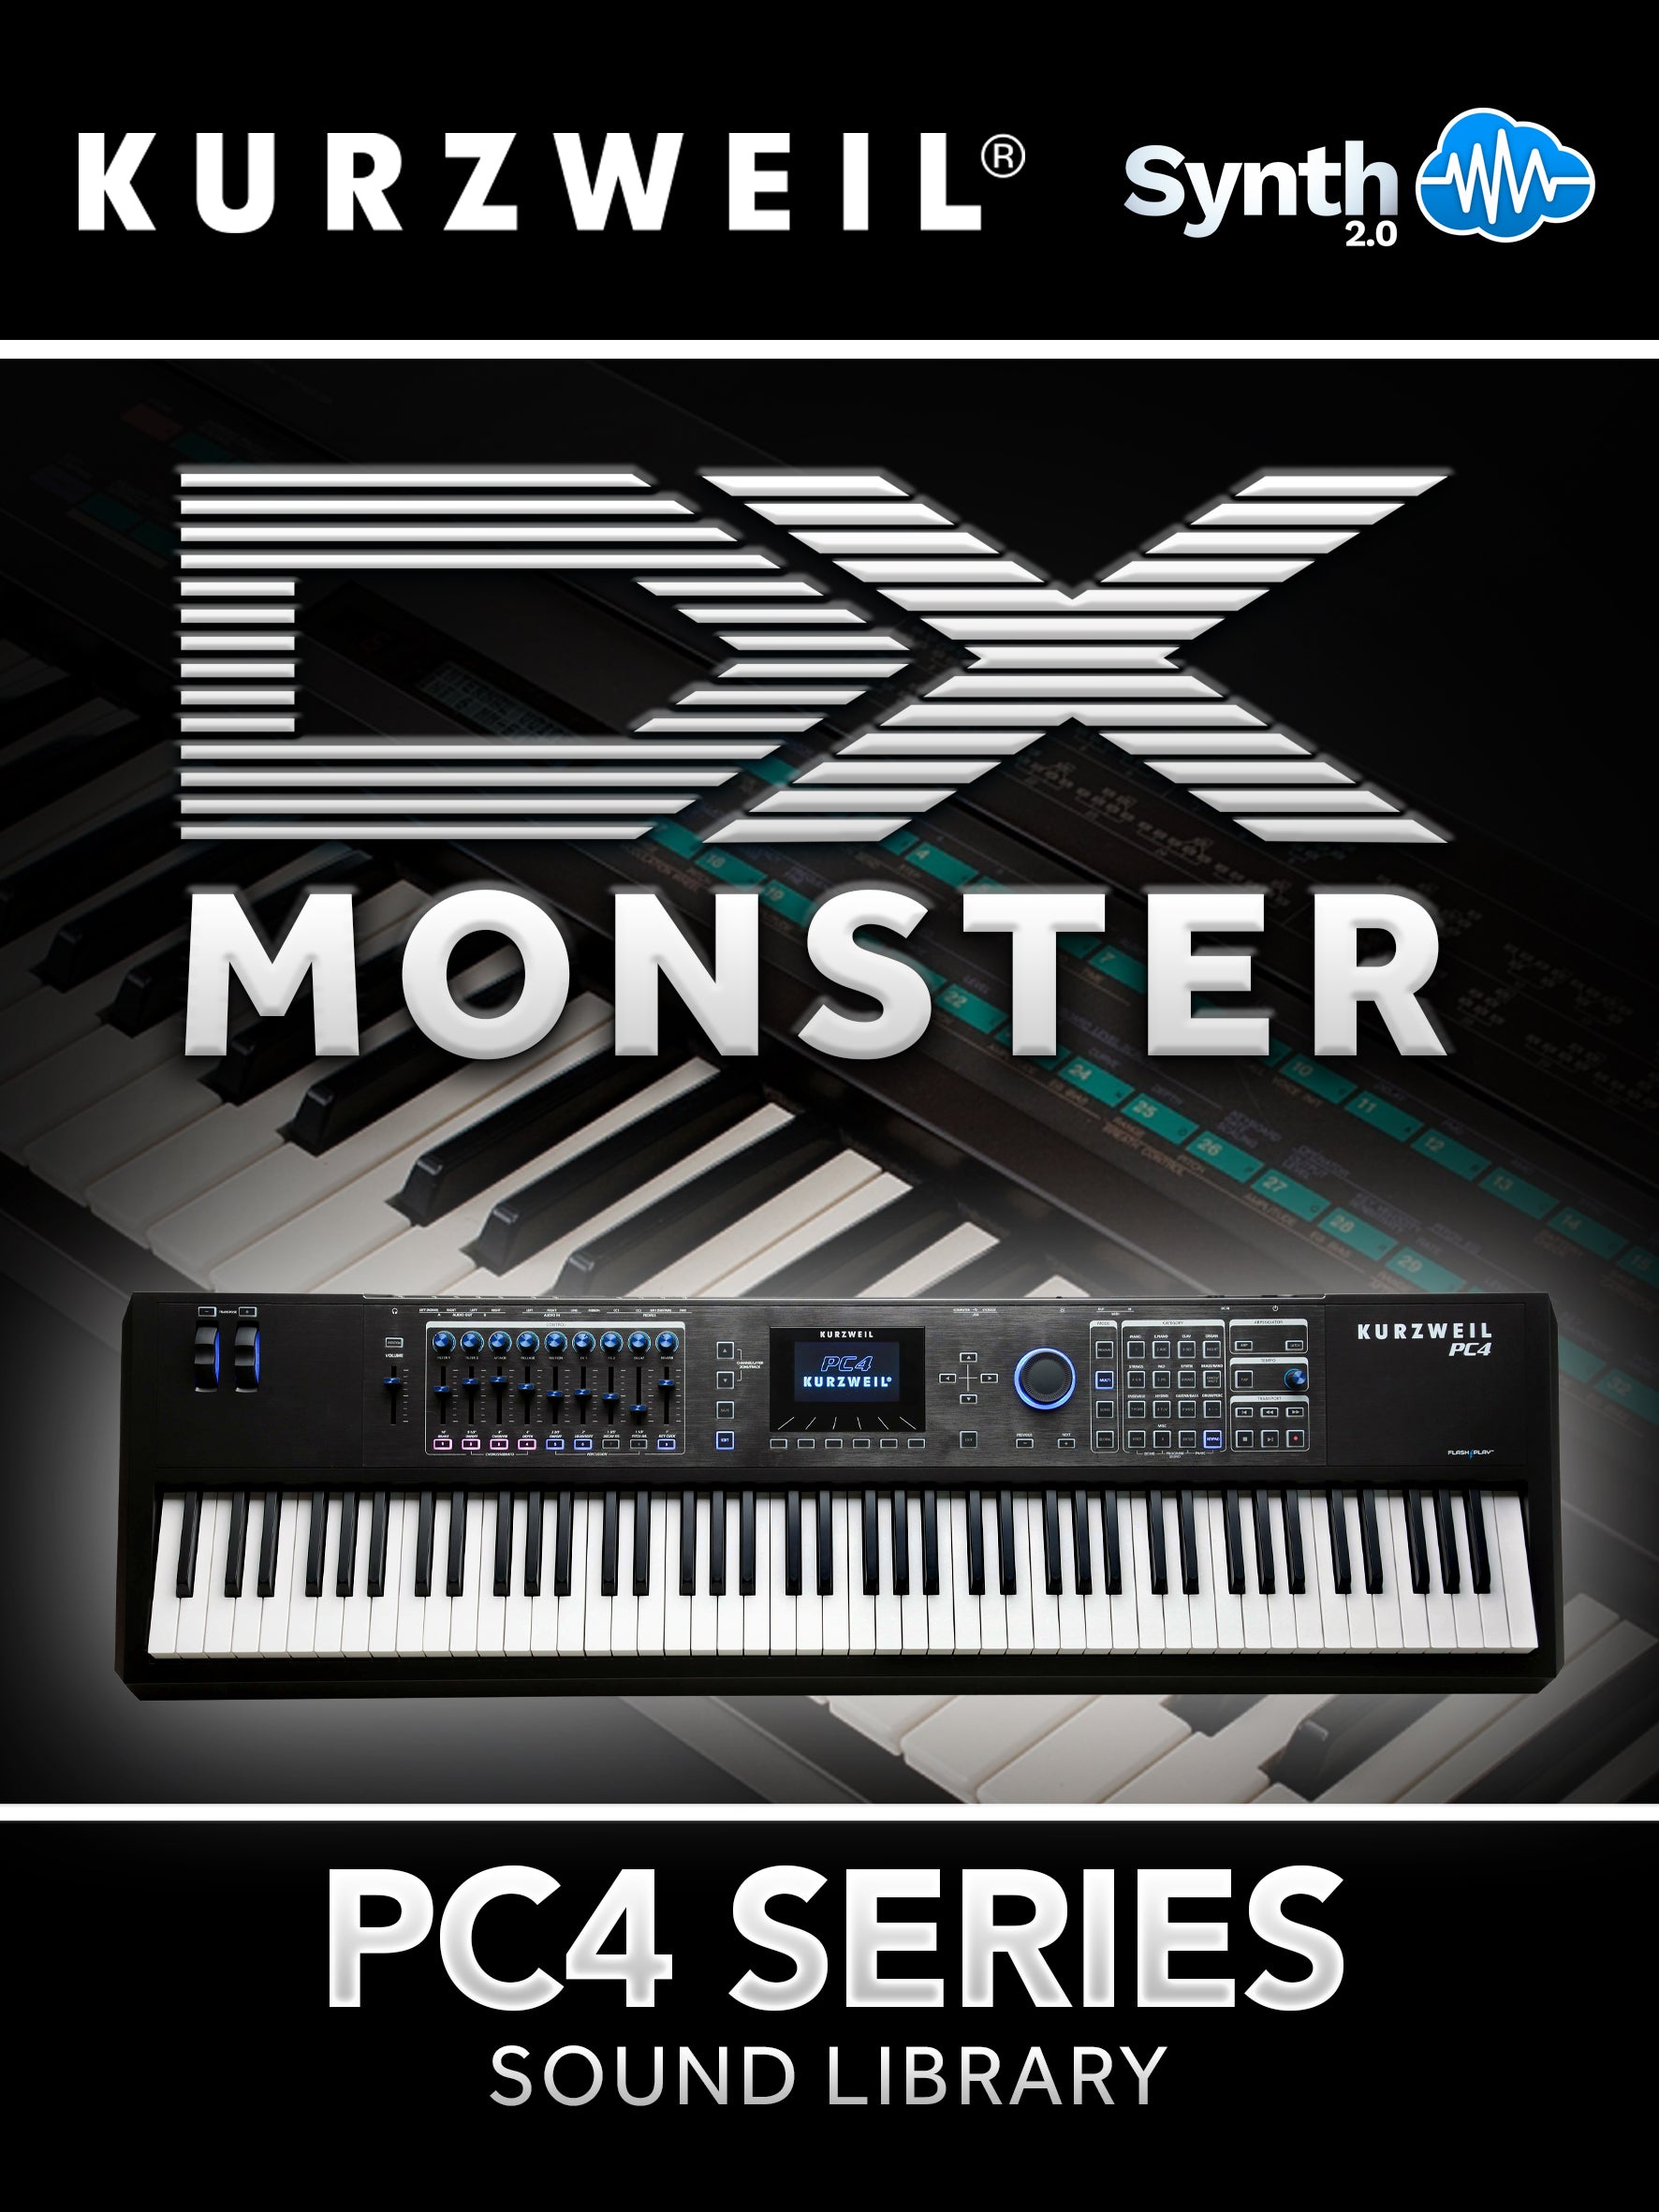 SCL459 - ( Bundle ) - DX Monster + Coverlogia V1 - Kurzweil PC4 Series